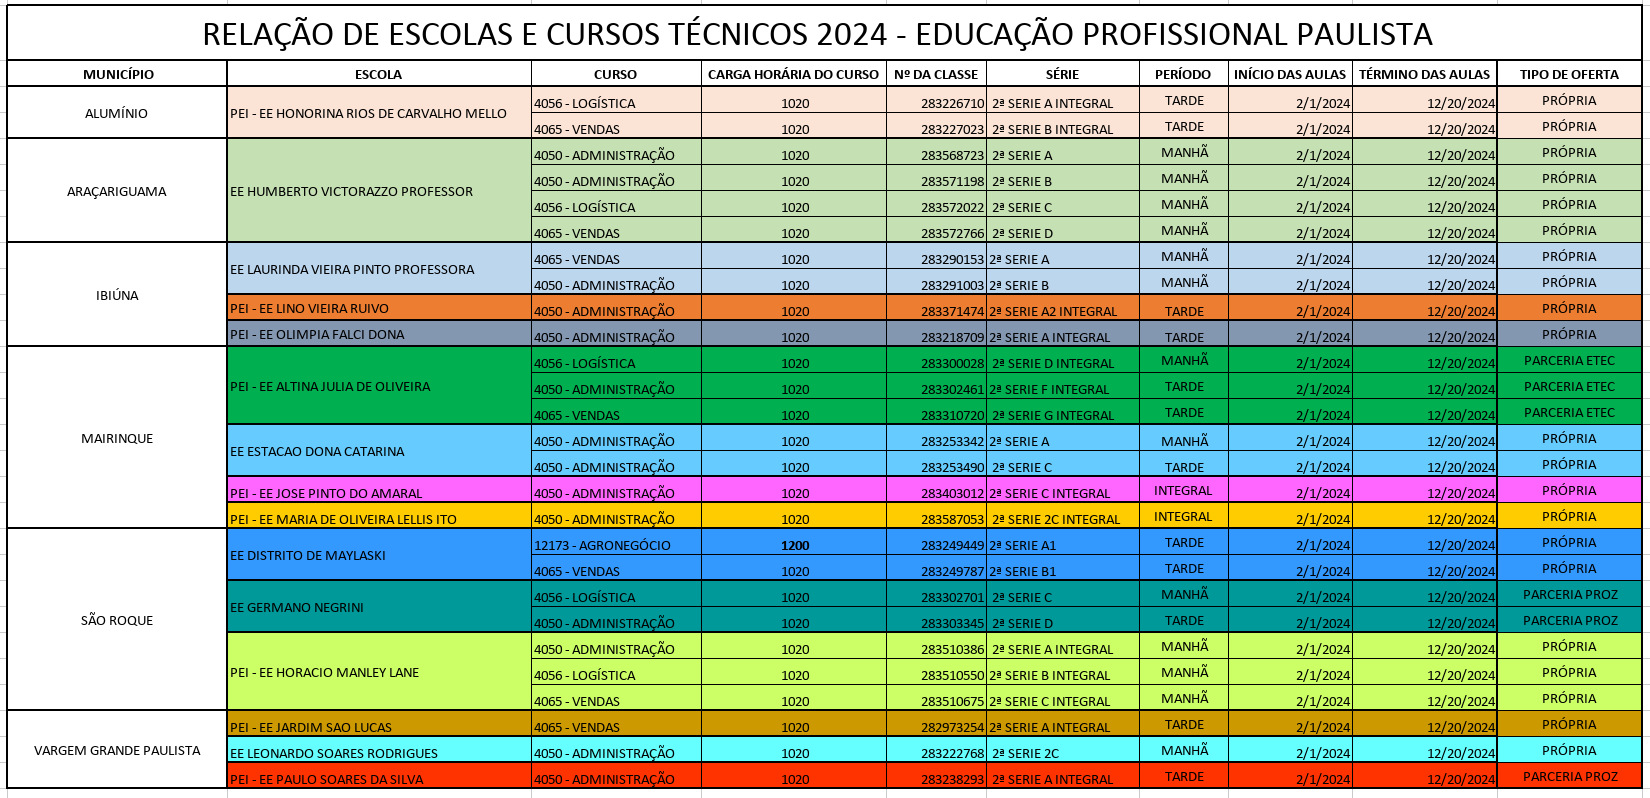 Relação de Escolas e Cursos Técnicos - Educação Profissional Paulista 2024